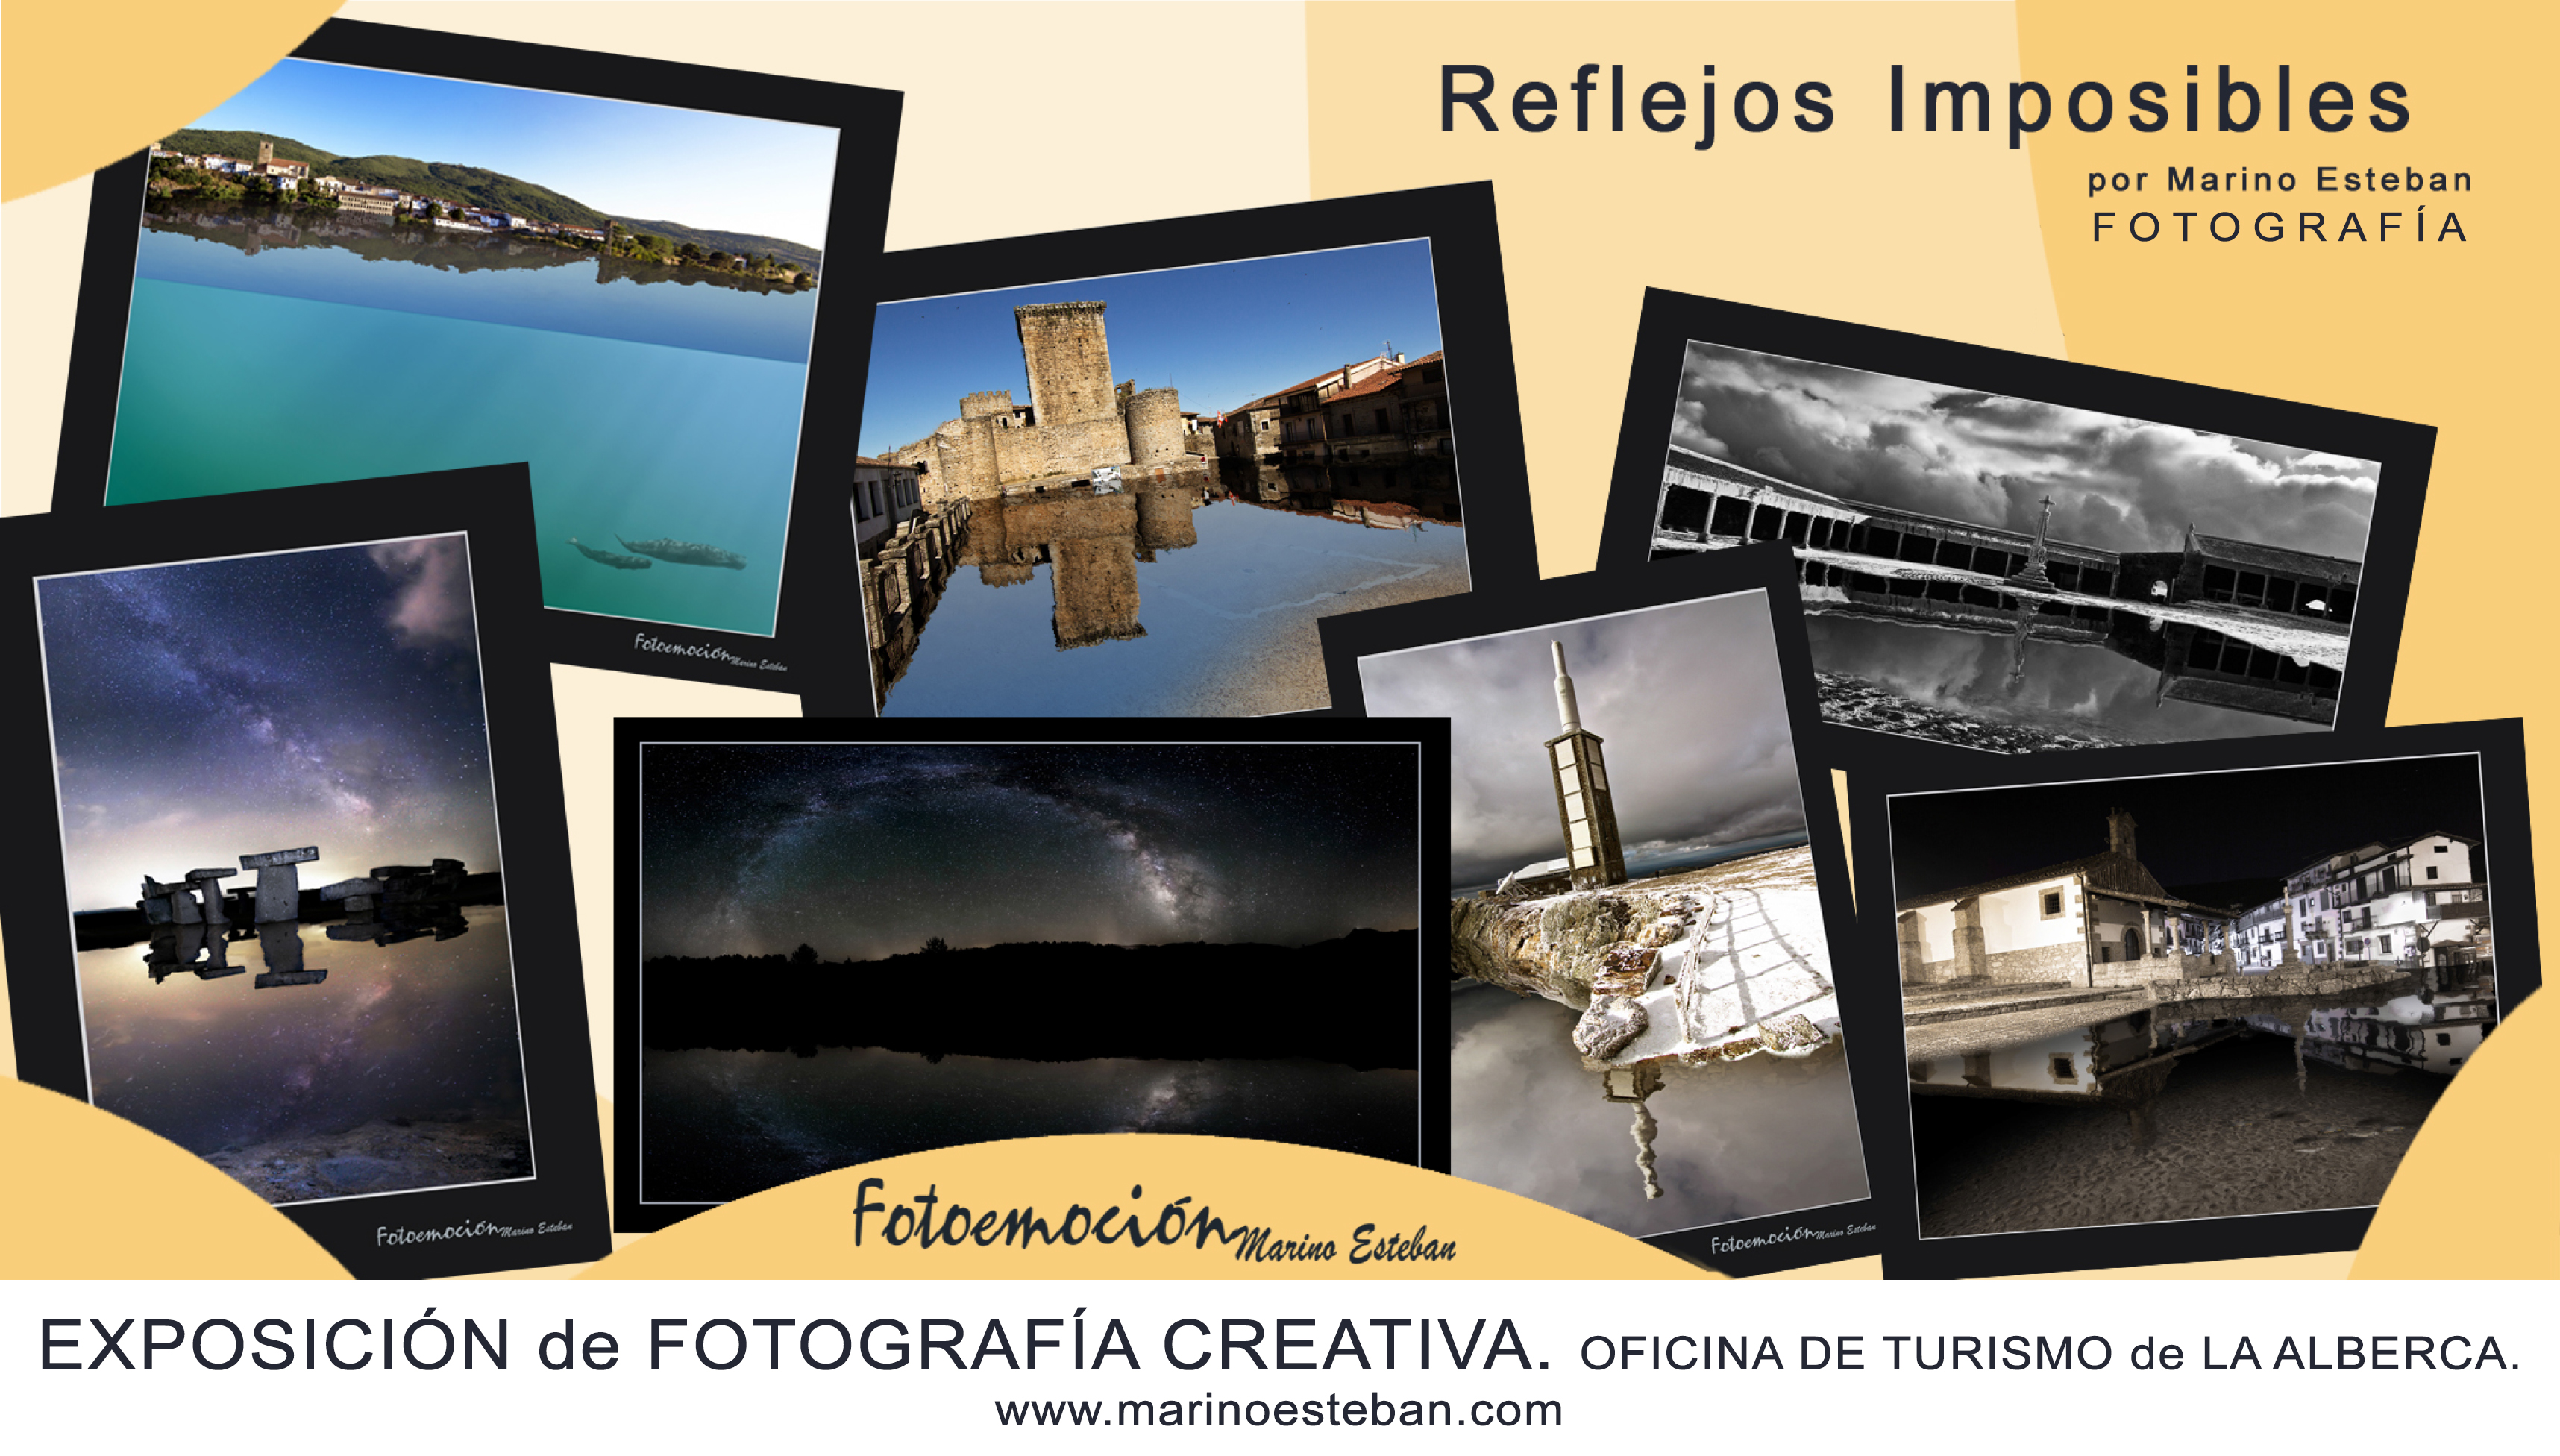 Foto 2 - Marino Esteban expone 'Reflejos imposibles' en la oficina de turismo